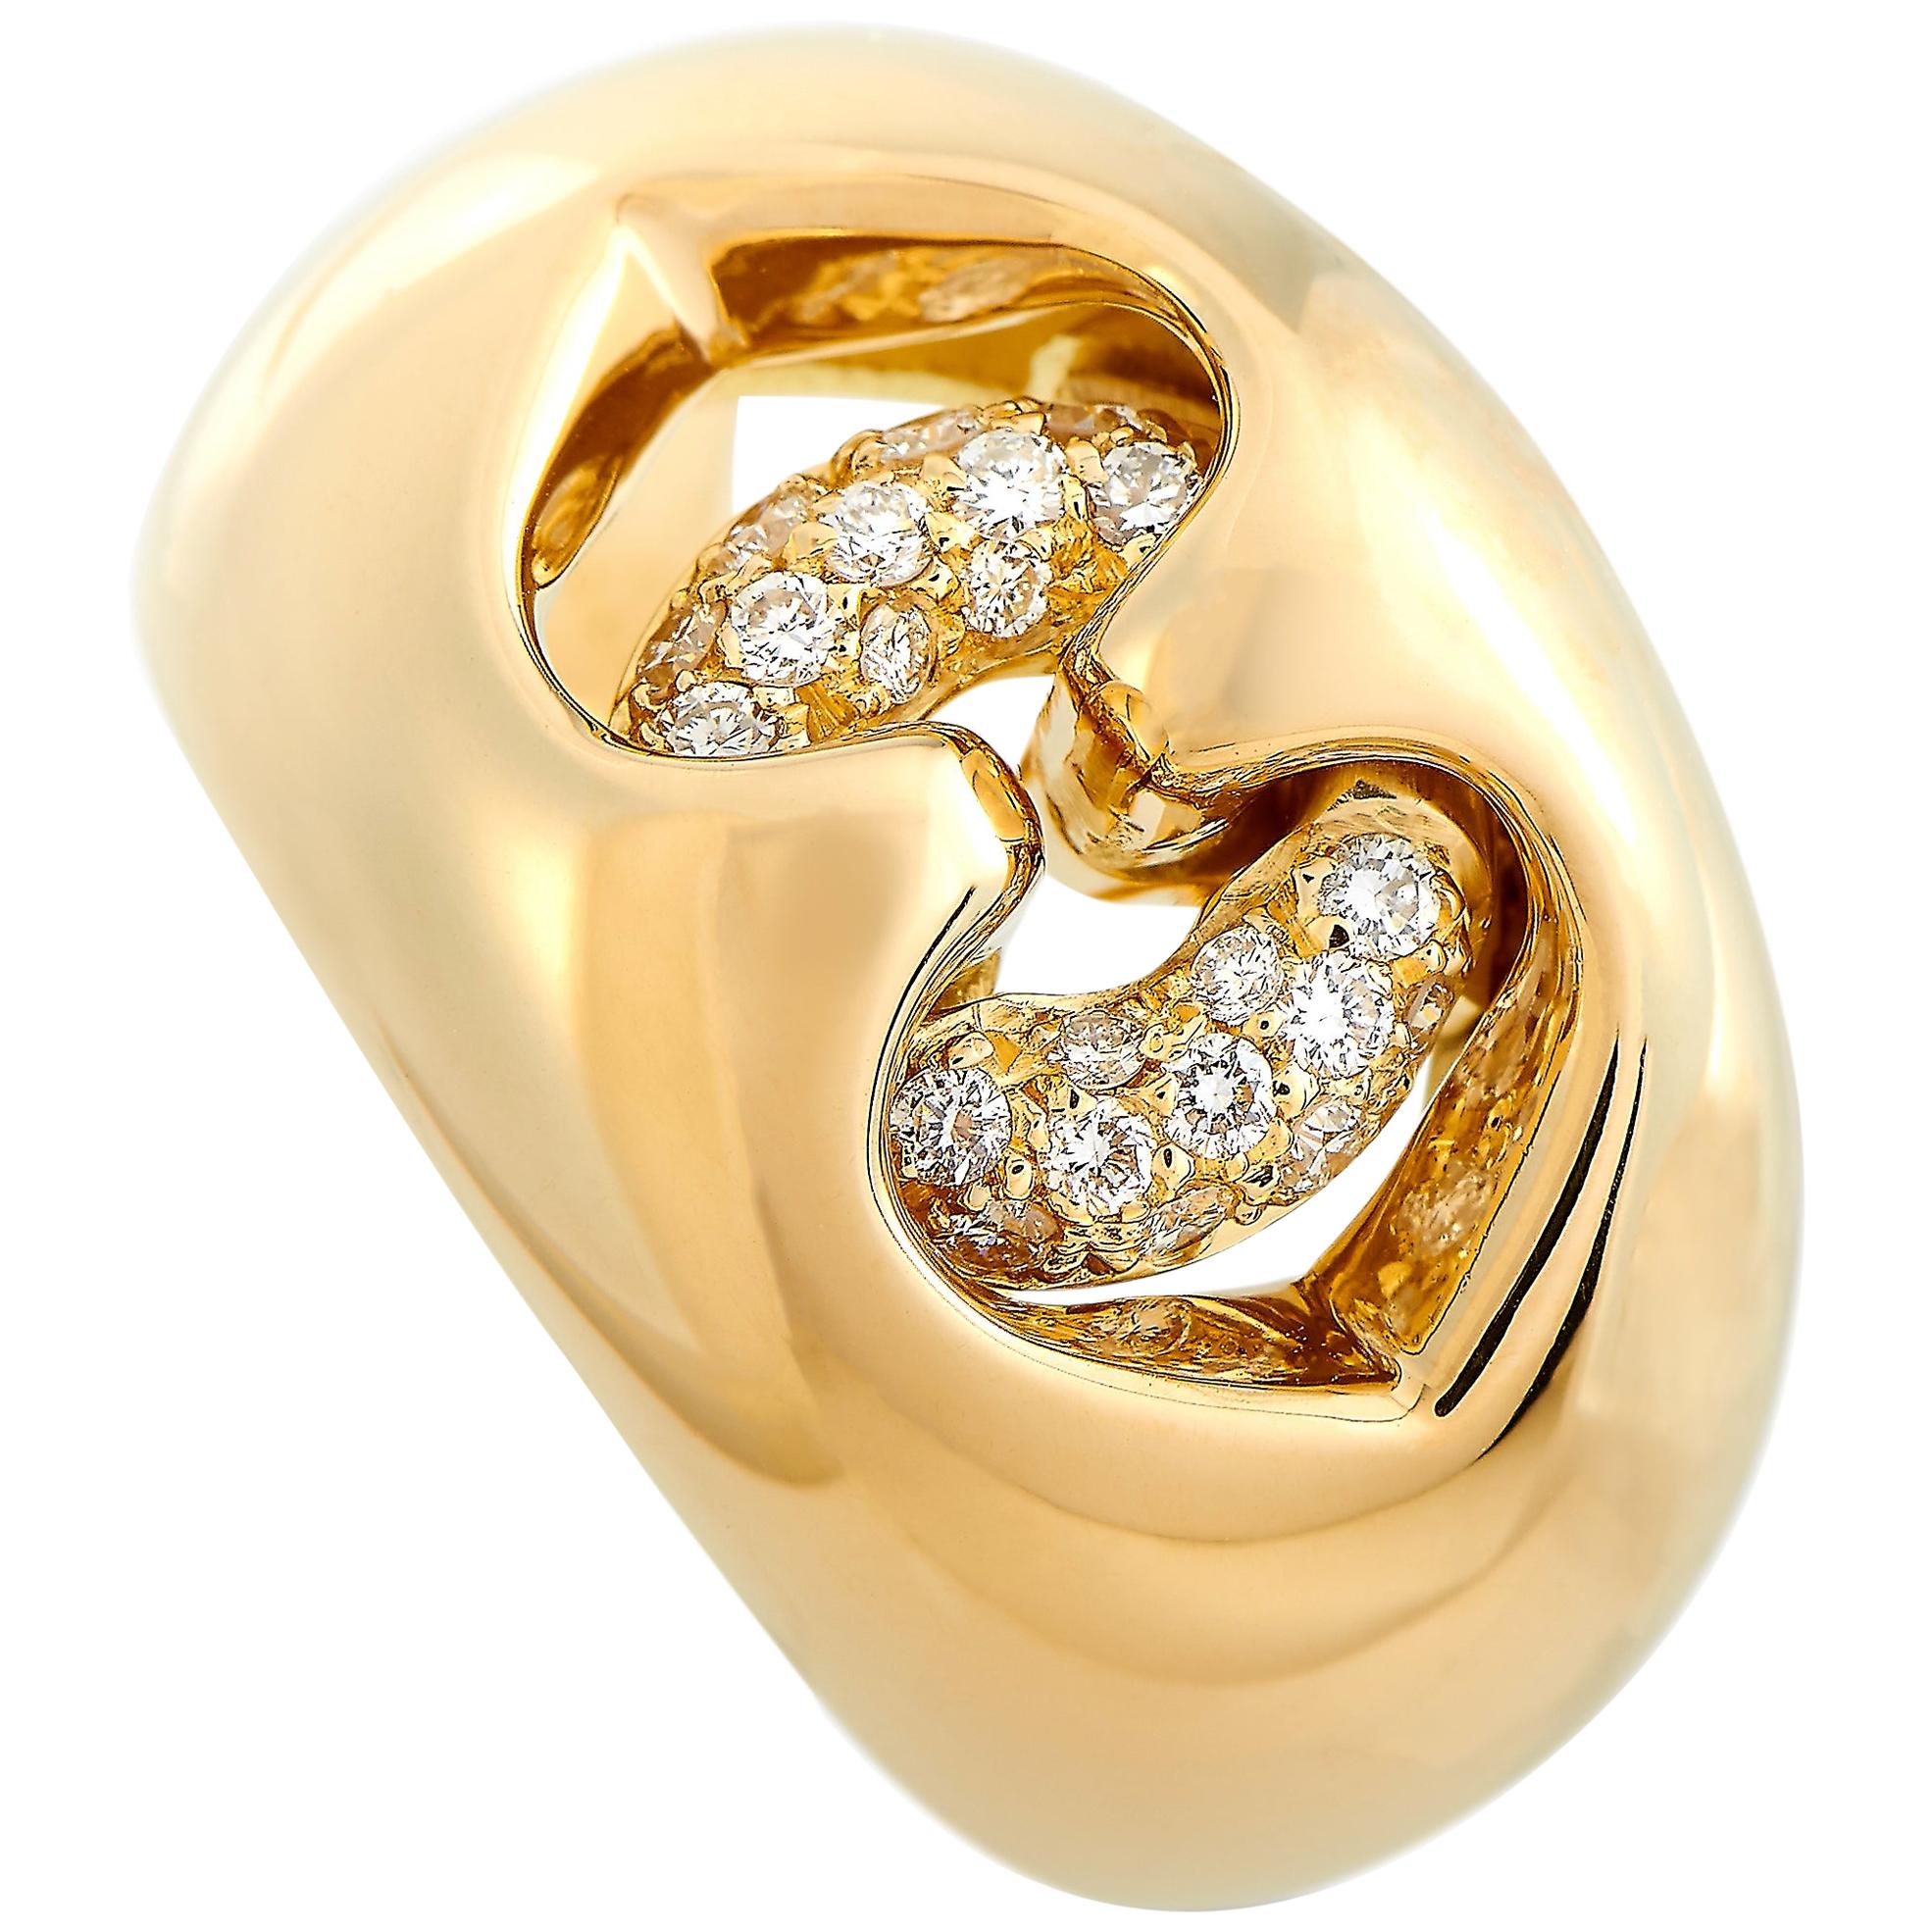 Bvlgari 18 Karat Yellow Gold 0.30 Carat Diamond Ring